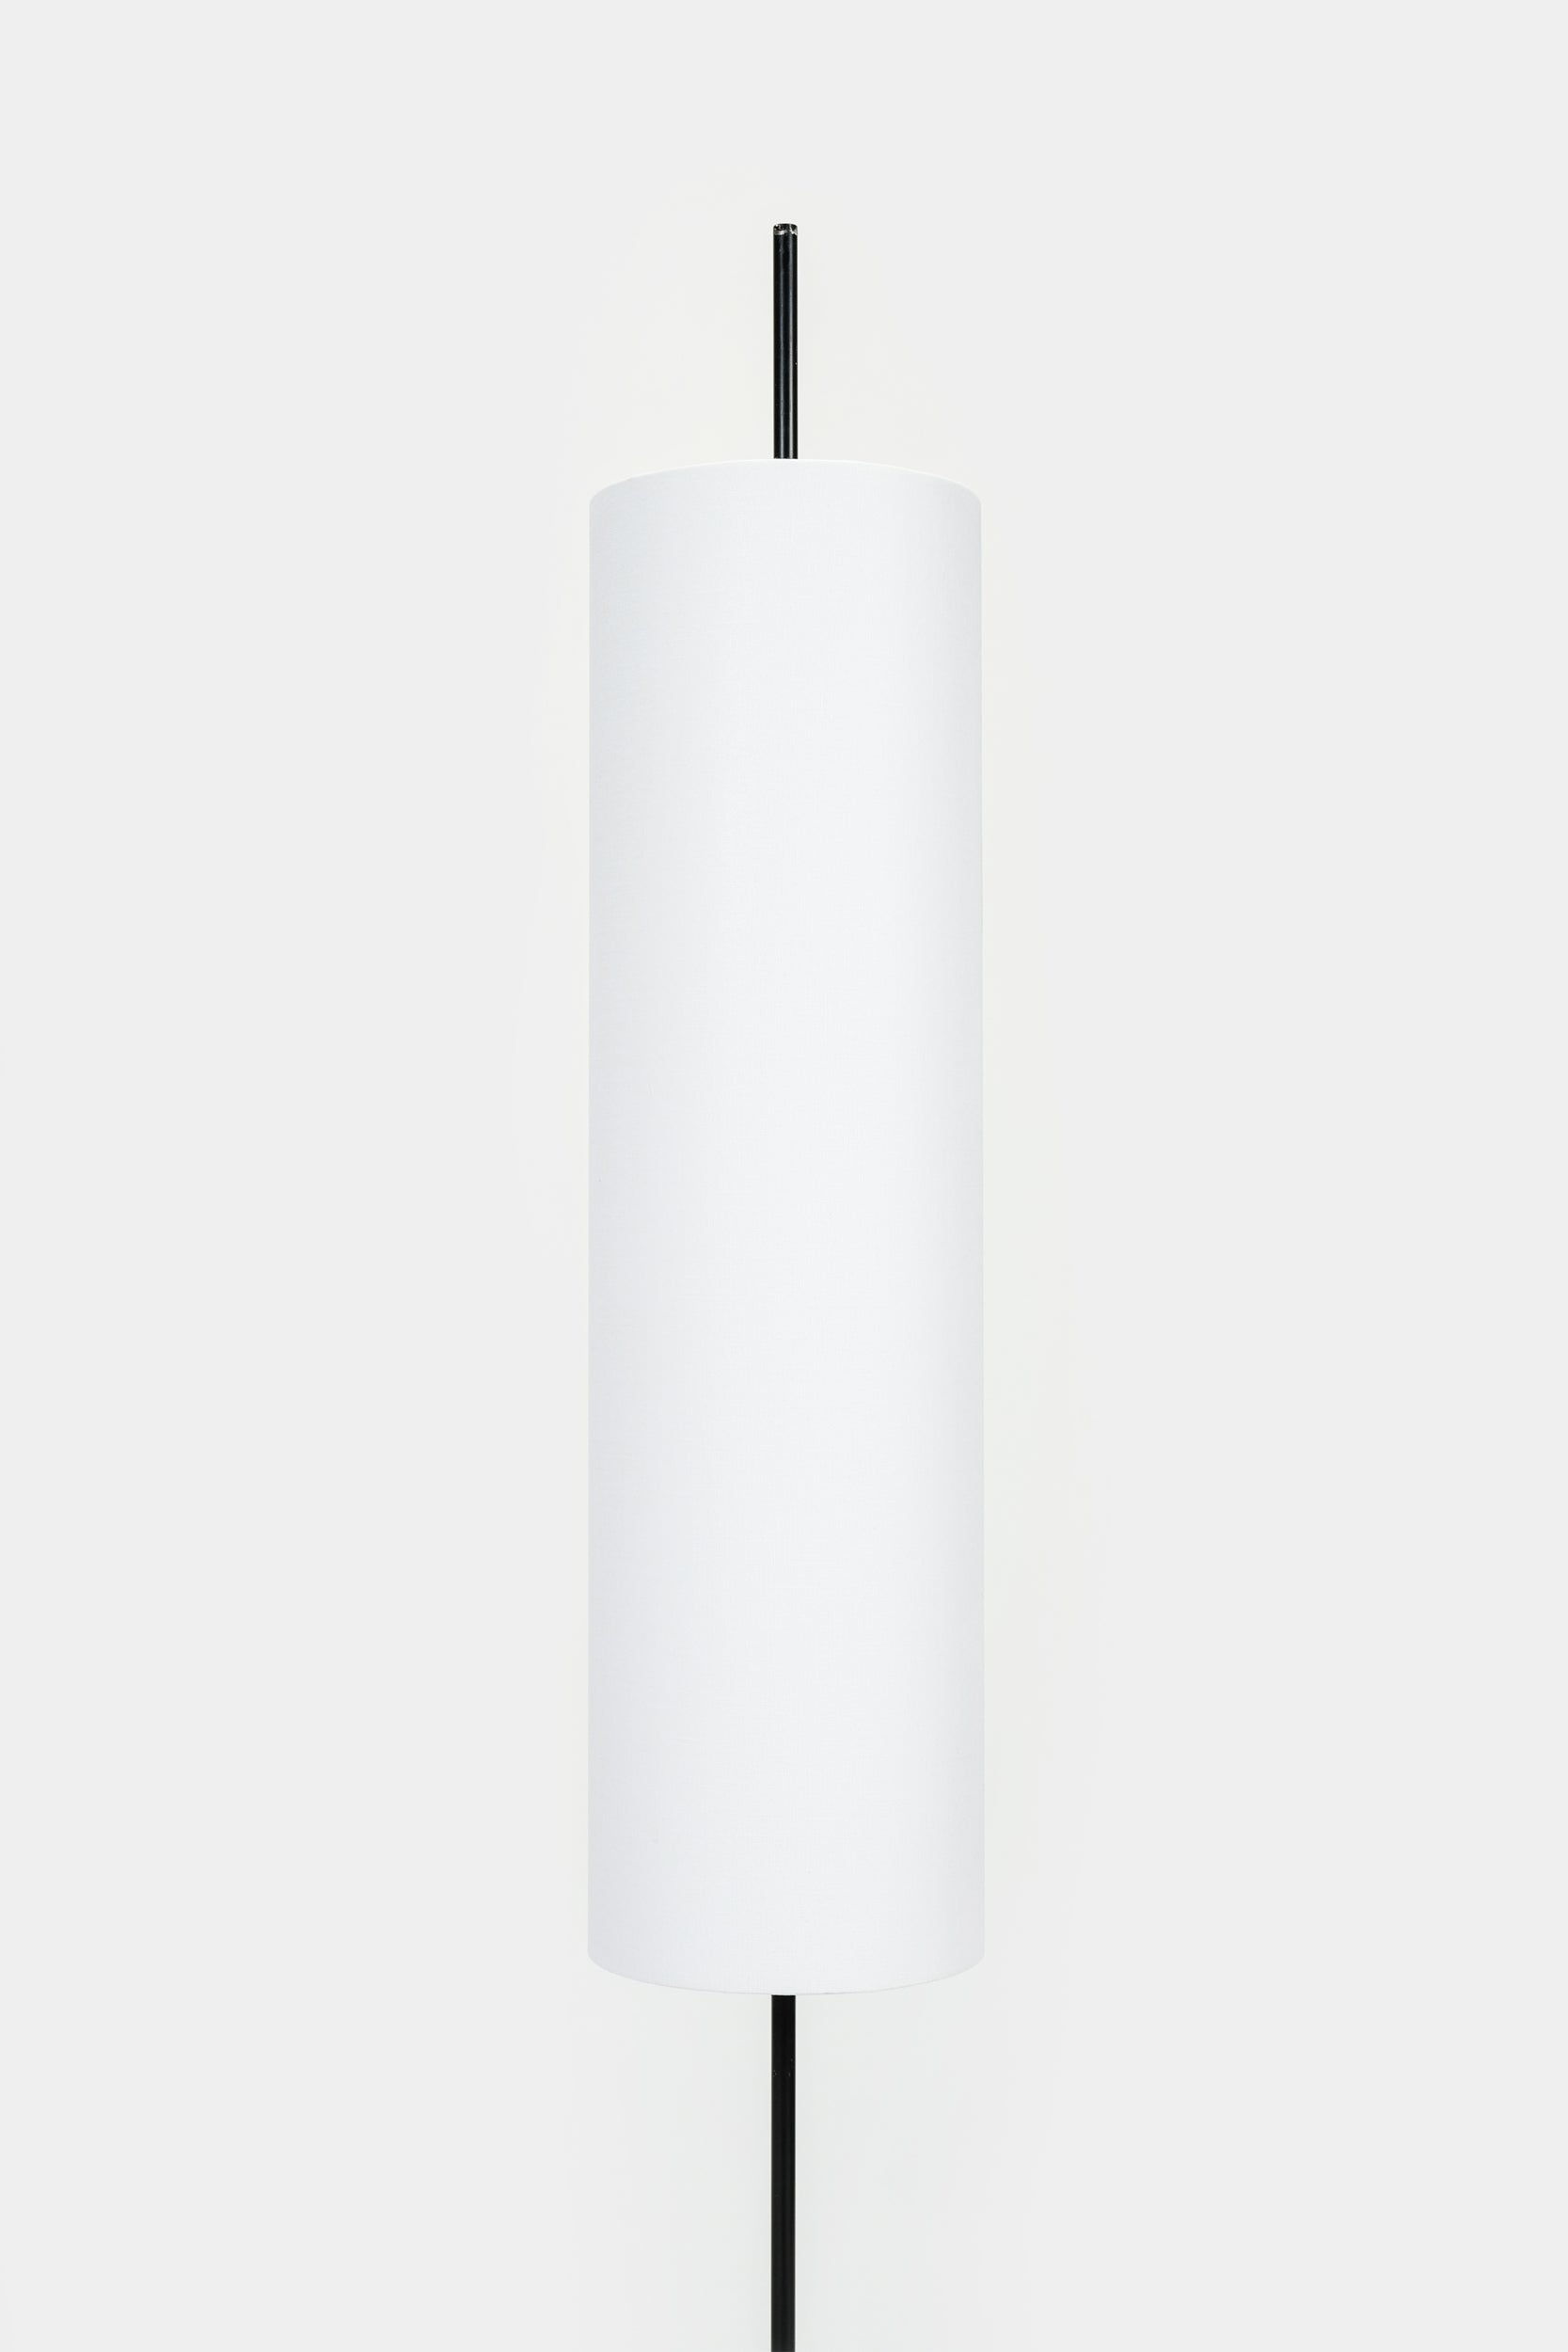 Tubus Lampe Italien, 60er